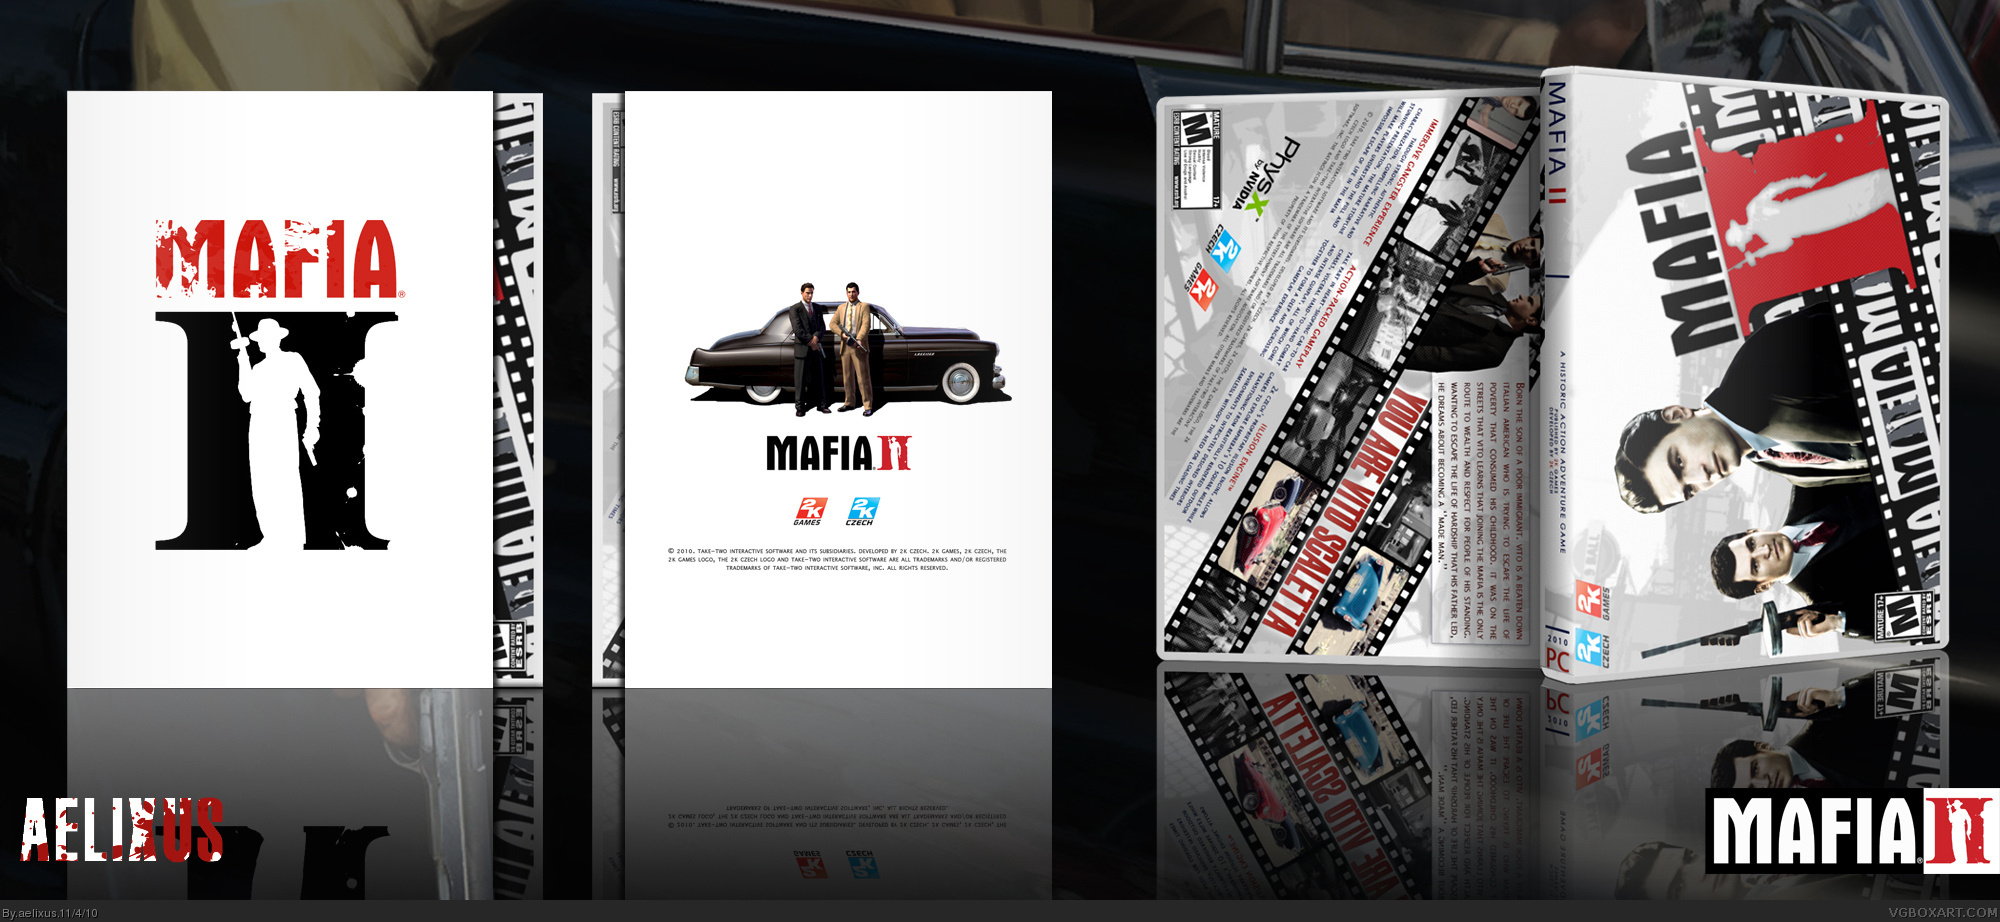 Mafia II box cover